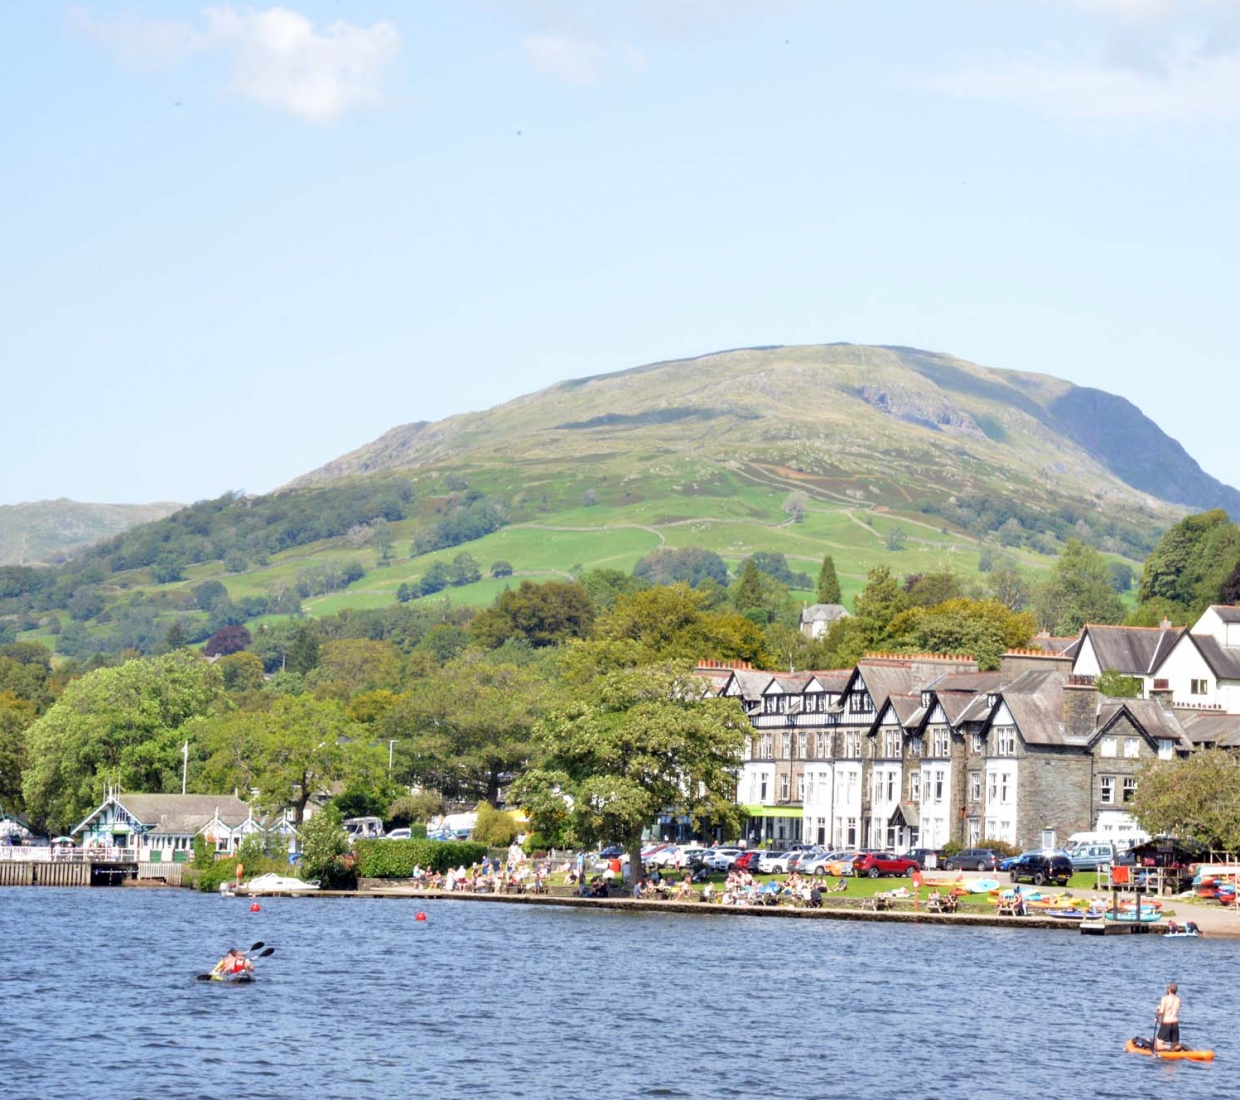 Seleção dos melhores e mais bonitos hotéis e casas de férias em Cumbria and the Lake District